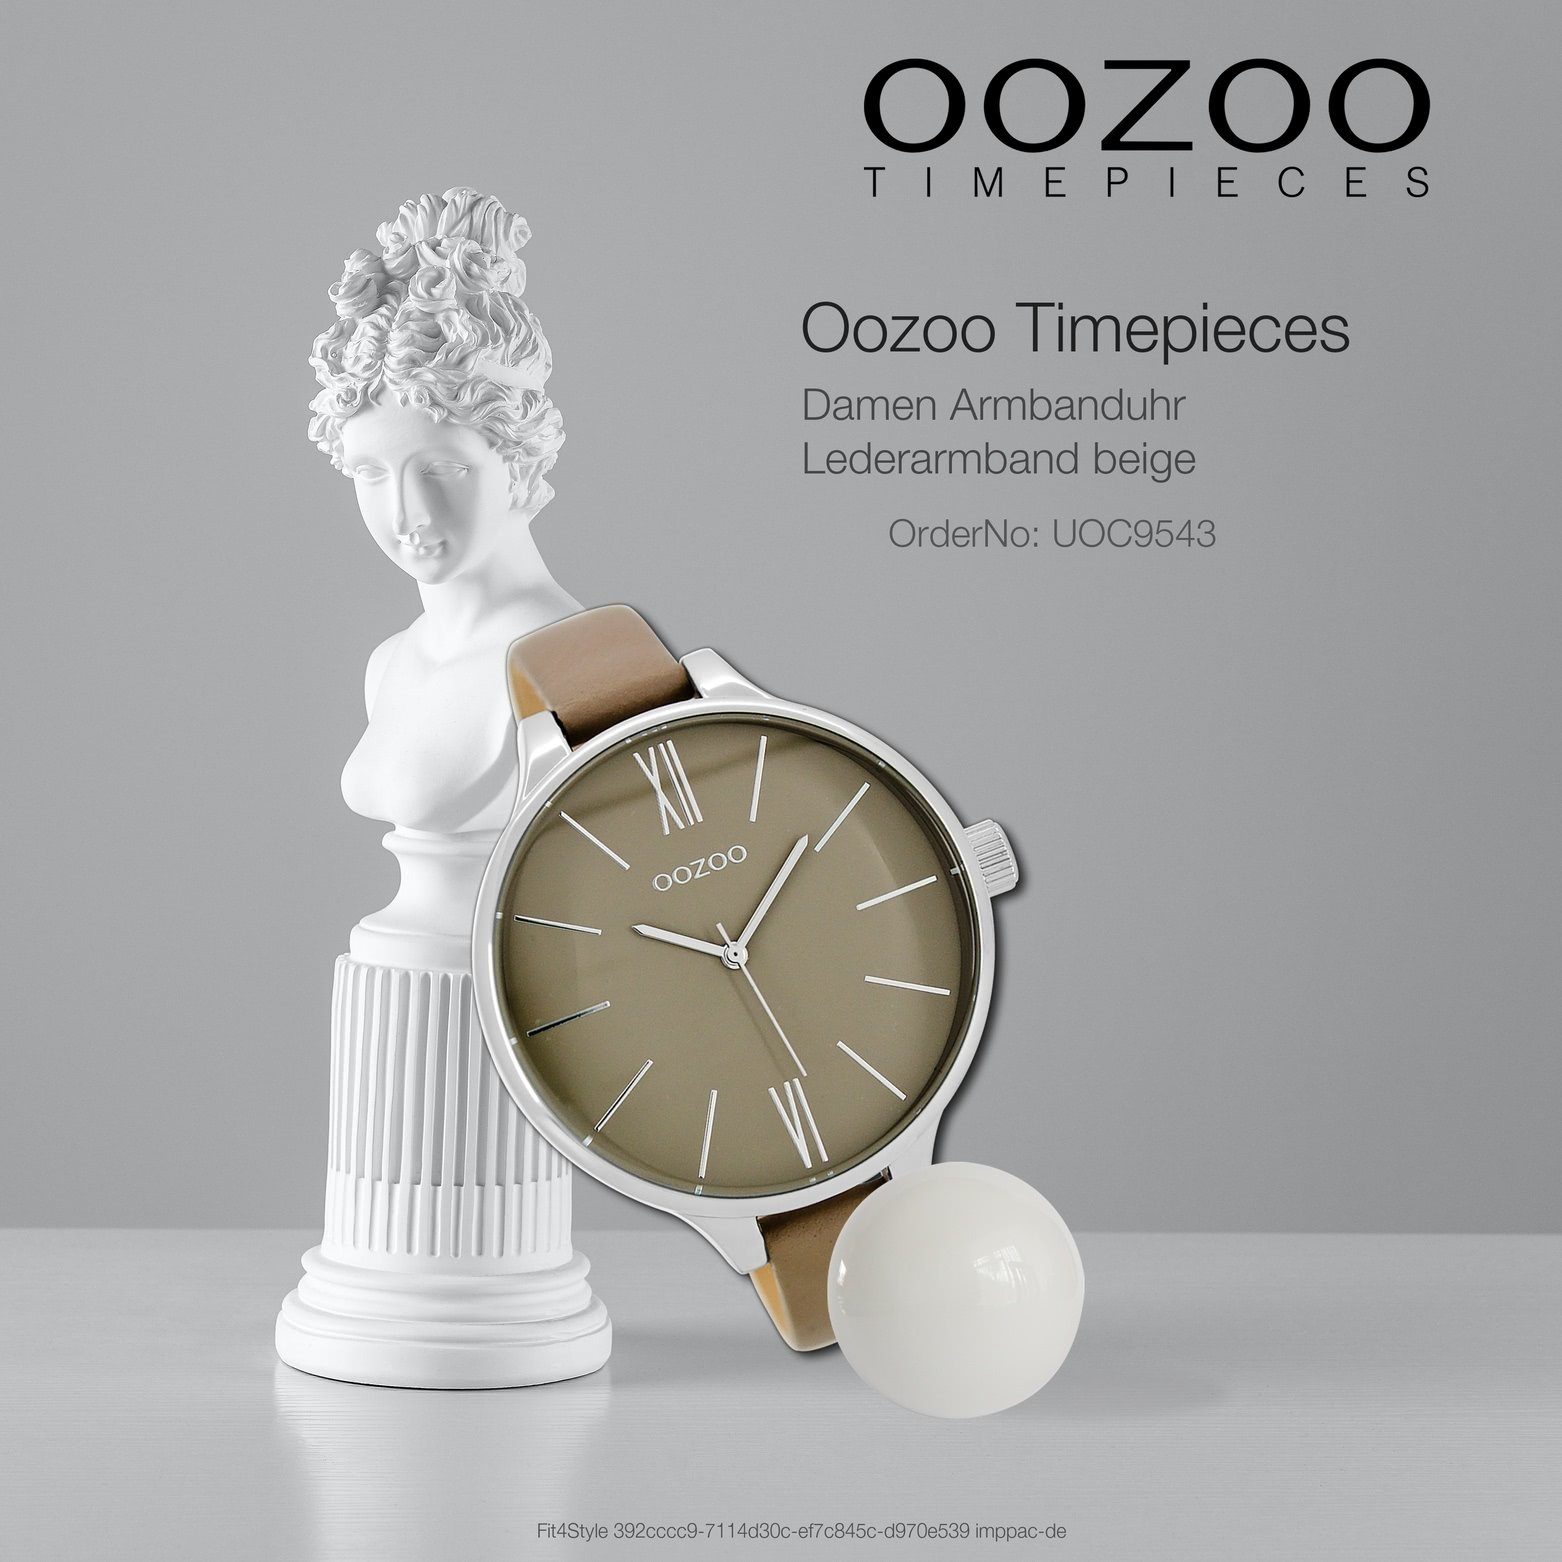 OOZOO Quarzuhr Damen (ca. groß Damenuhr rund, Oozoo beige, Fashion-Style Armbanduhr Lederarmband, 45mm)